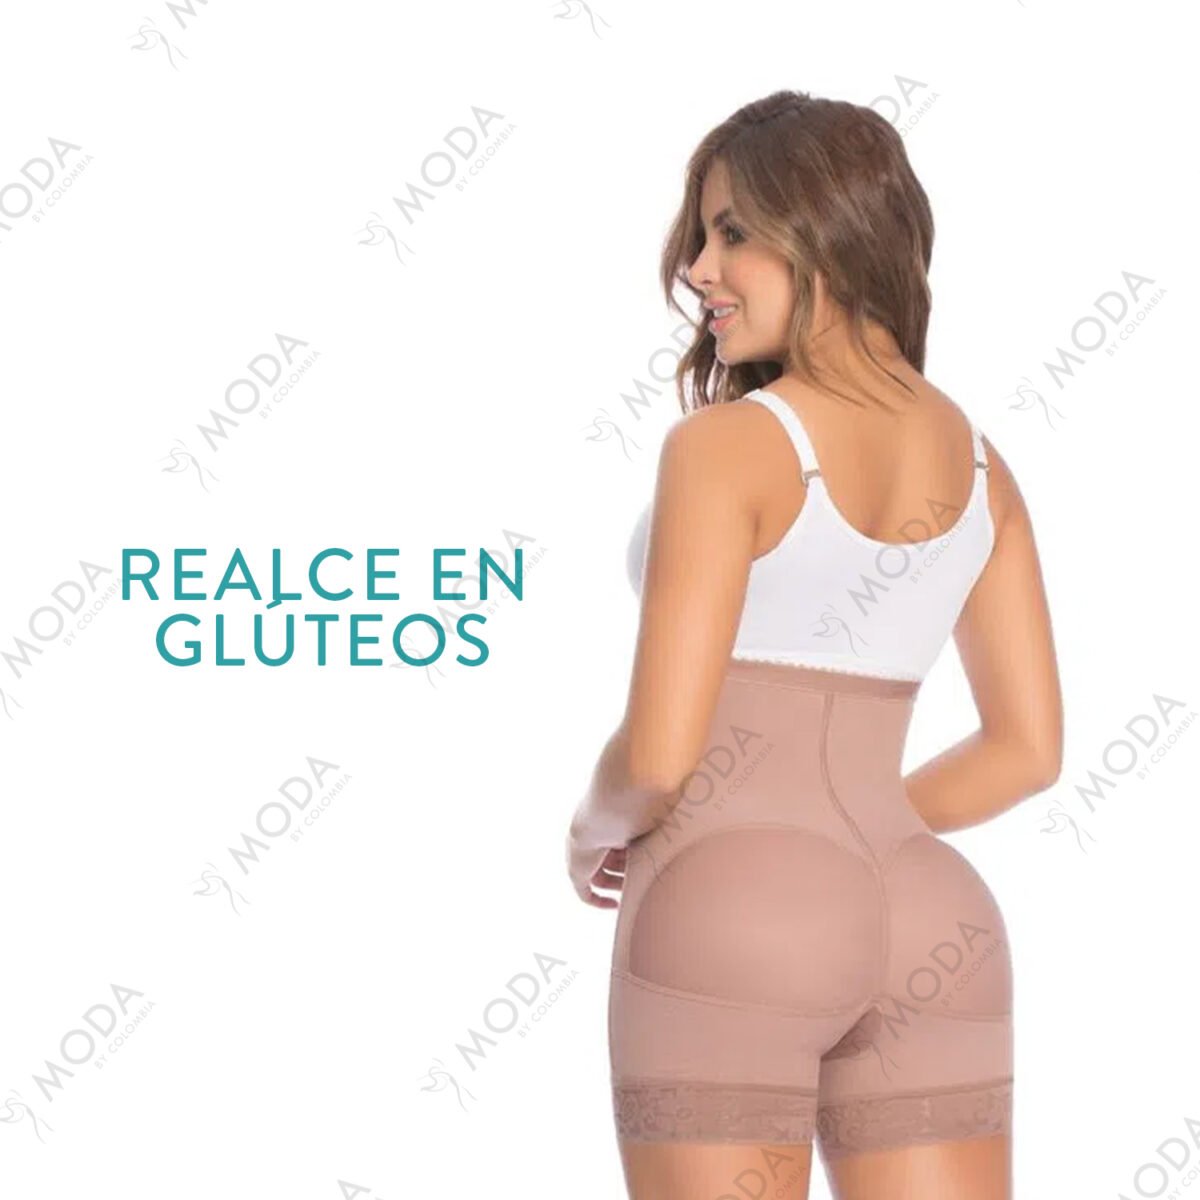 Con la faja colombiana panty alto con moldeo podrás lucir cualquier prenda ajustada de tu preferencia. Ideal para usar con vestidos, shorts o leggins.